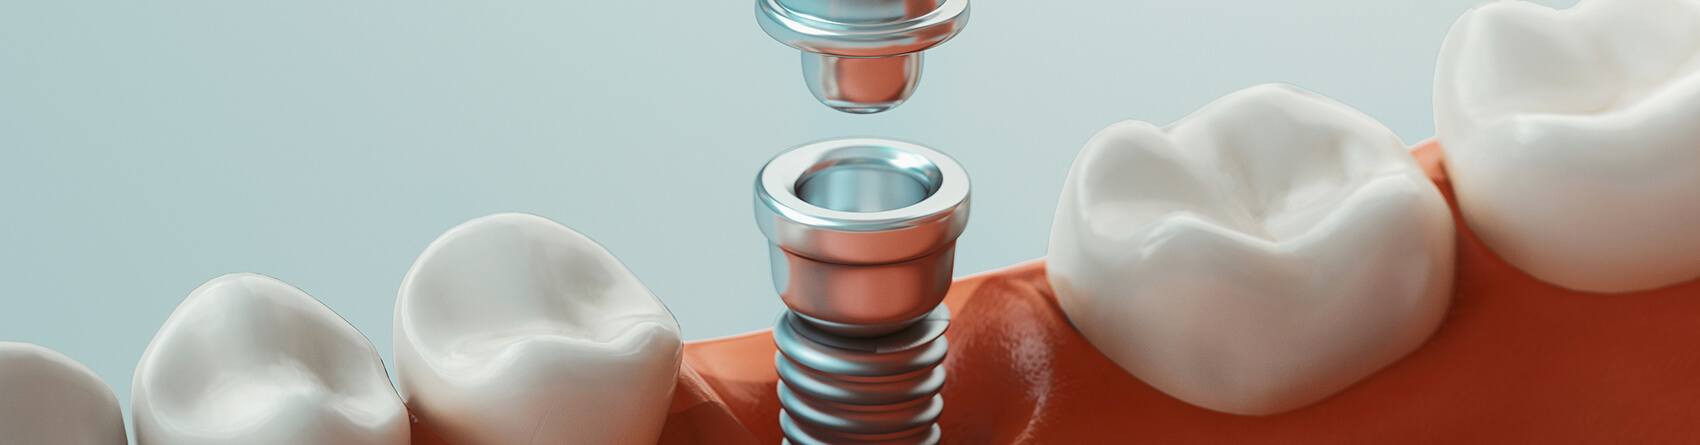 Animated dental implant procedure